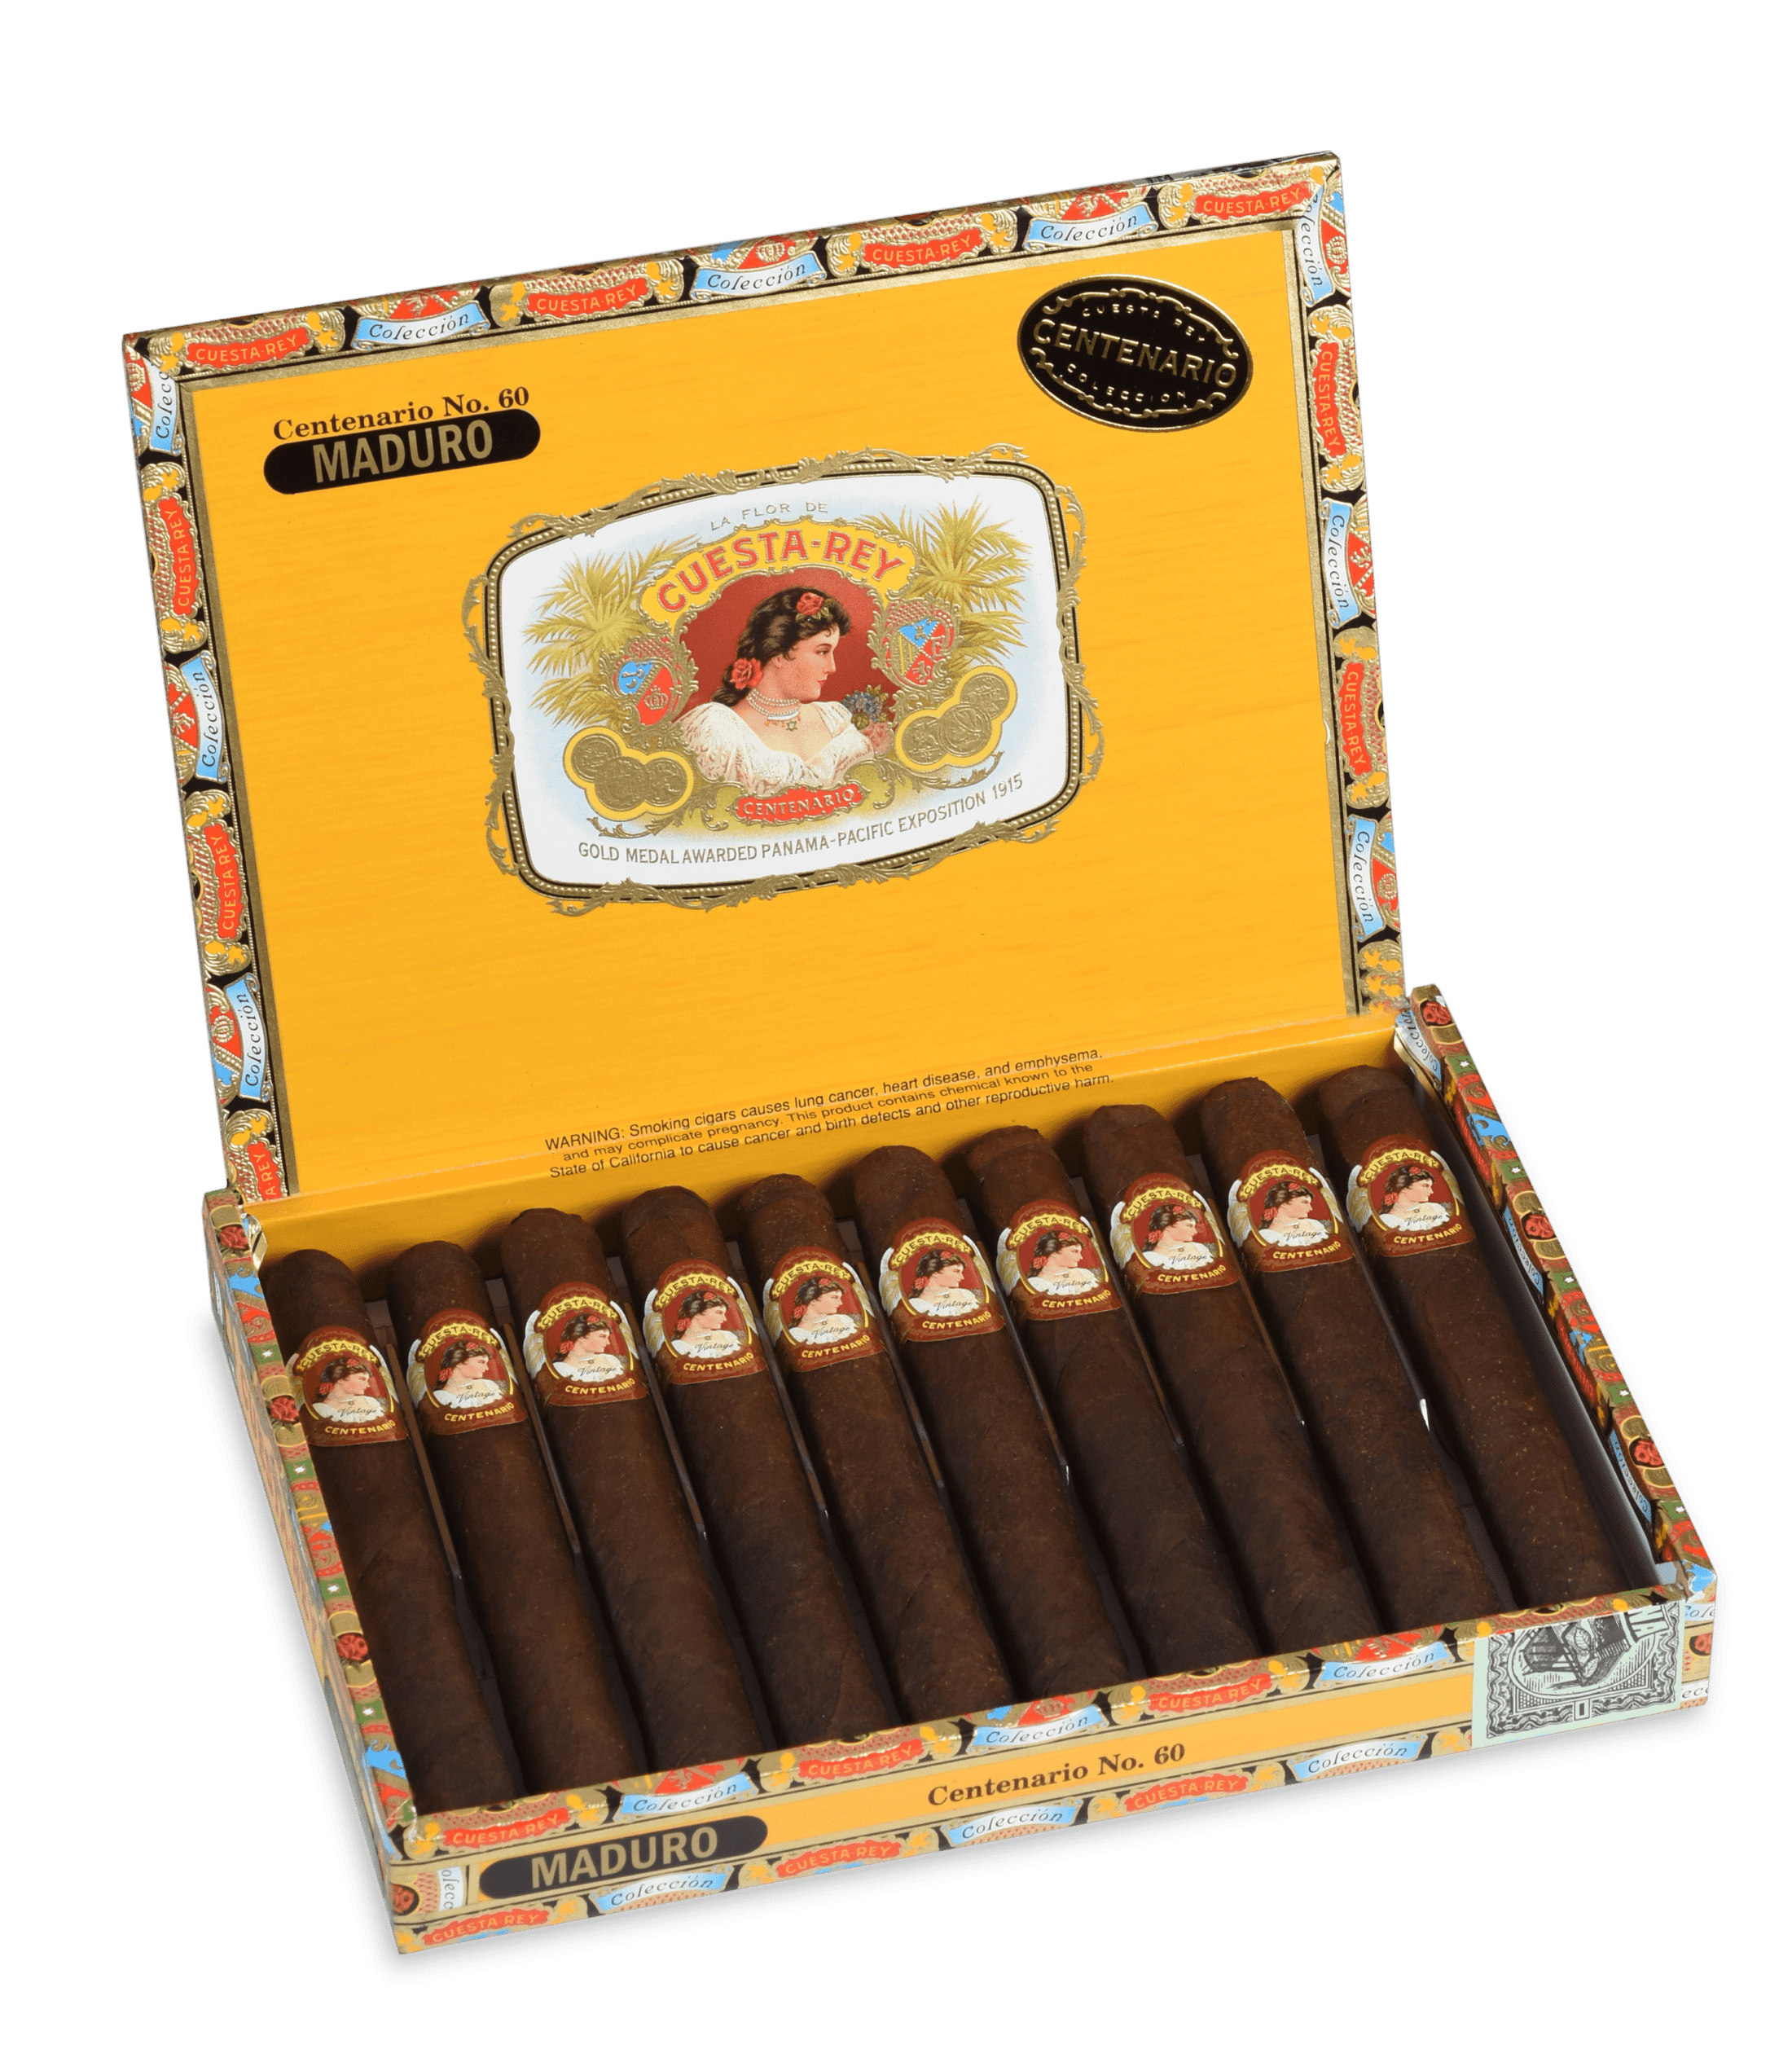 Open box of 10 count of Cuesta Rey Centenario No. 60 Maduro cigars